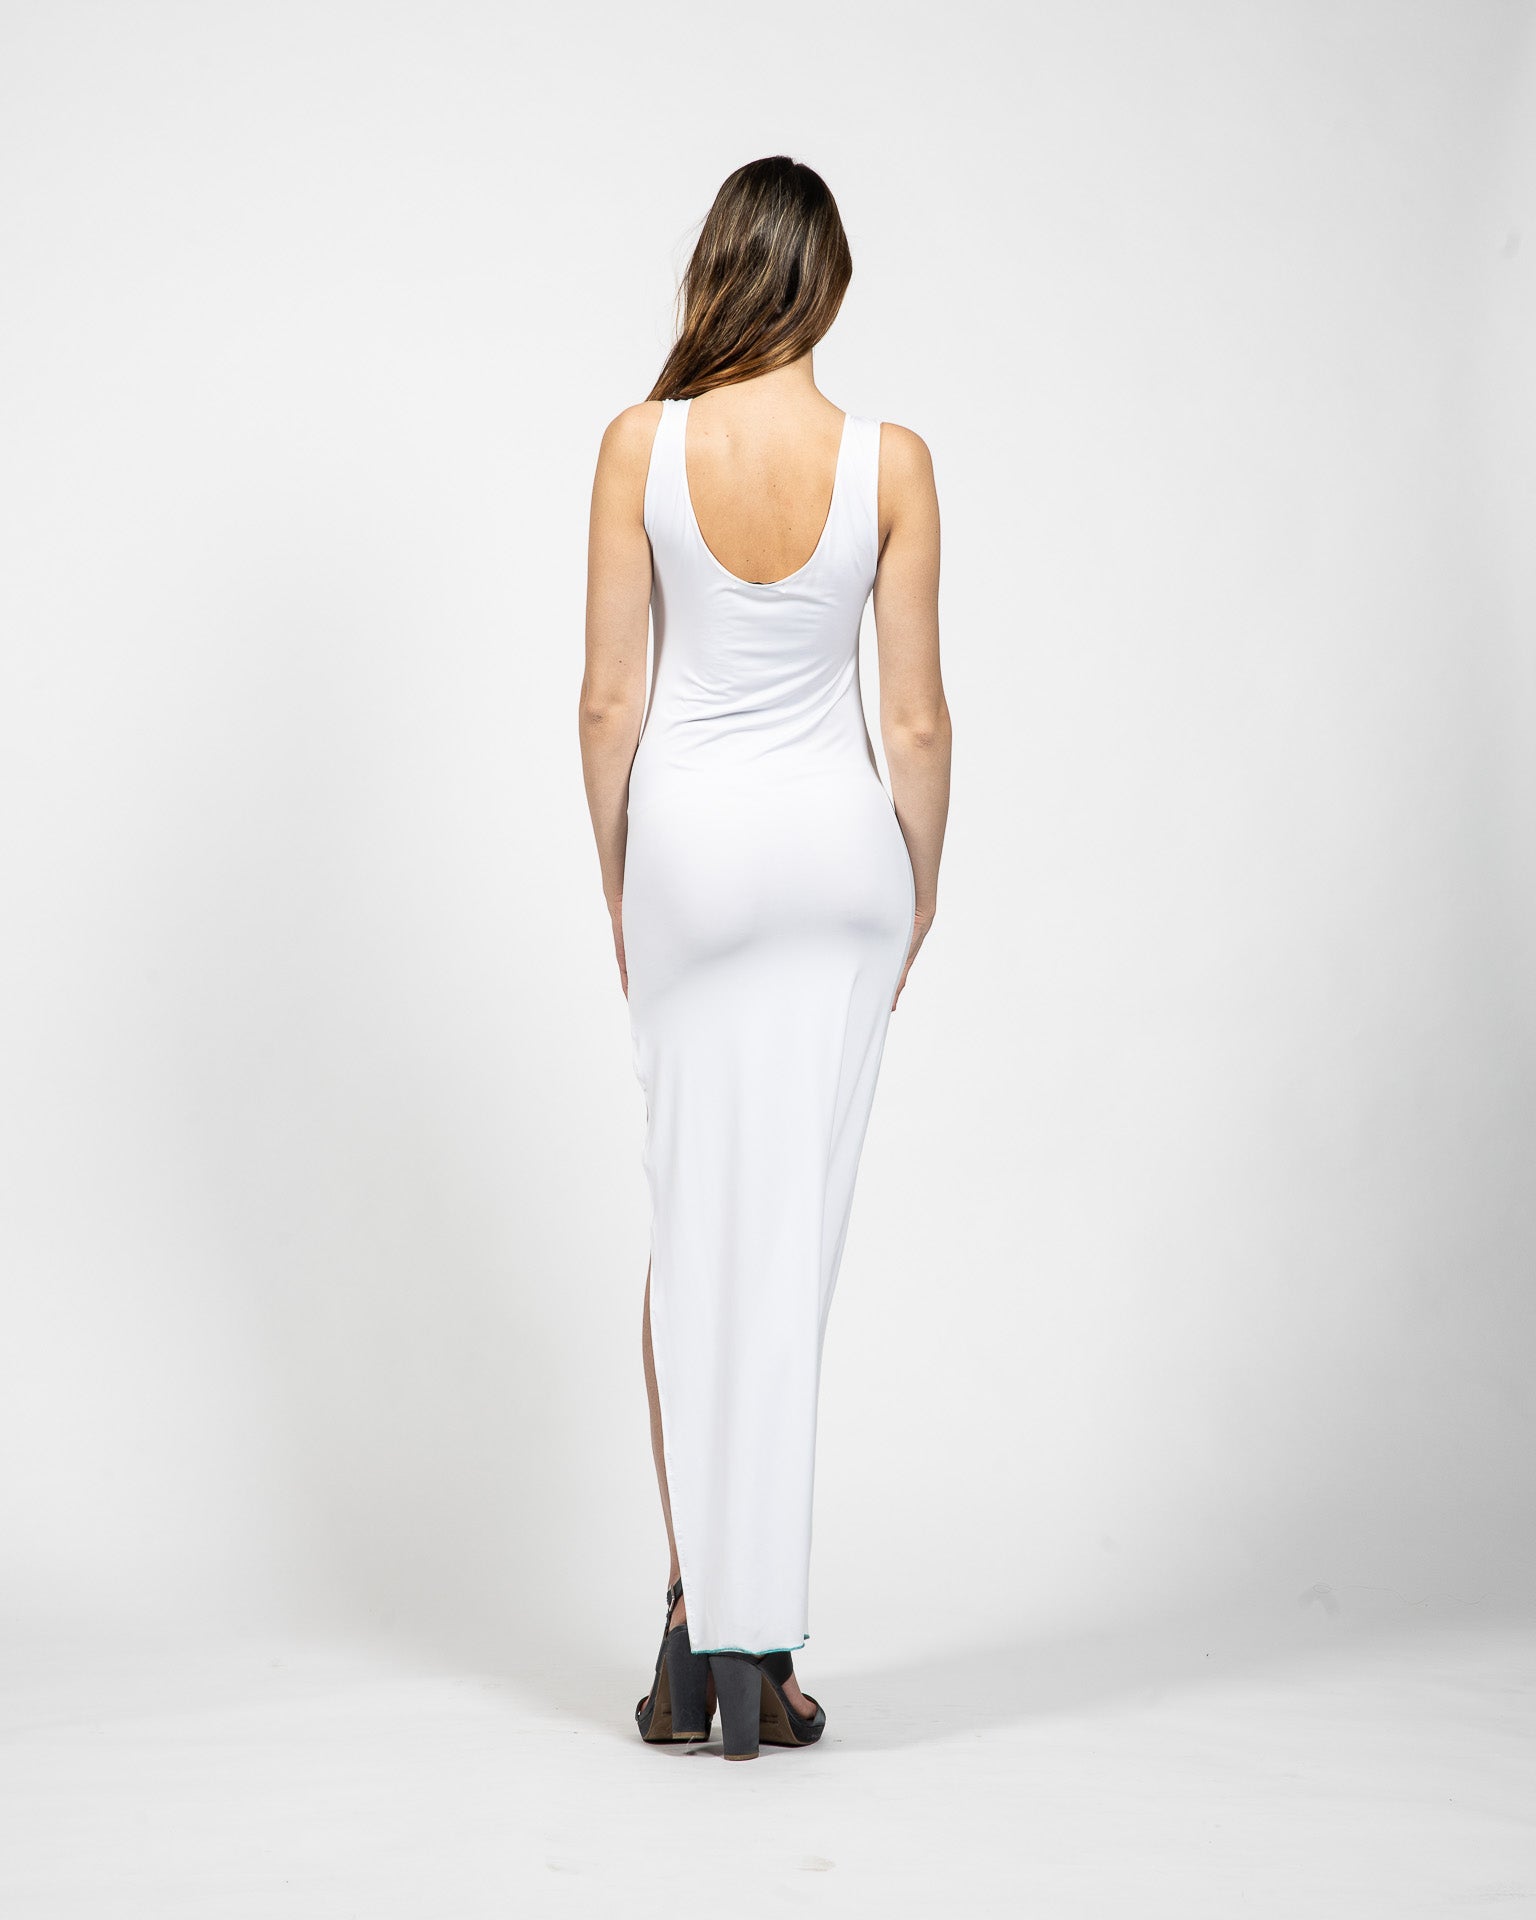 V – Neck Long White Dress - Back View - Samuel Vartan